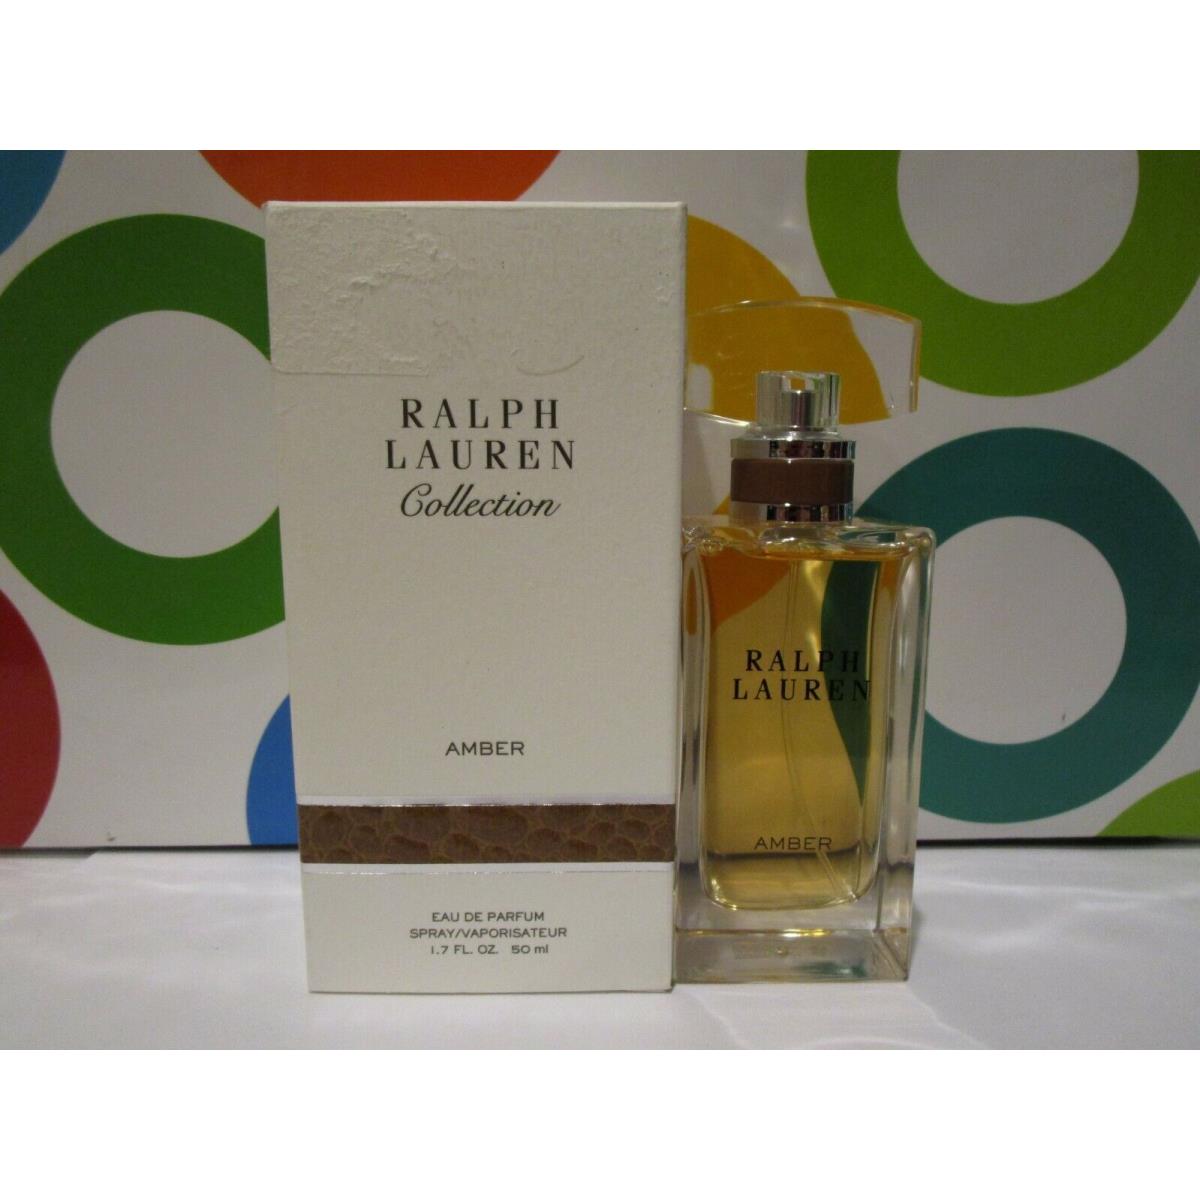 Ralph Lauren Collection Amber Eau DE Parfum Spray 1.7 OZ Boxed